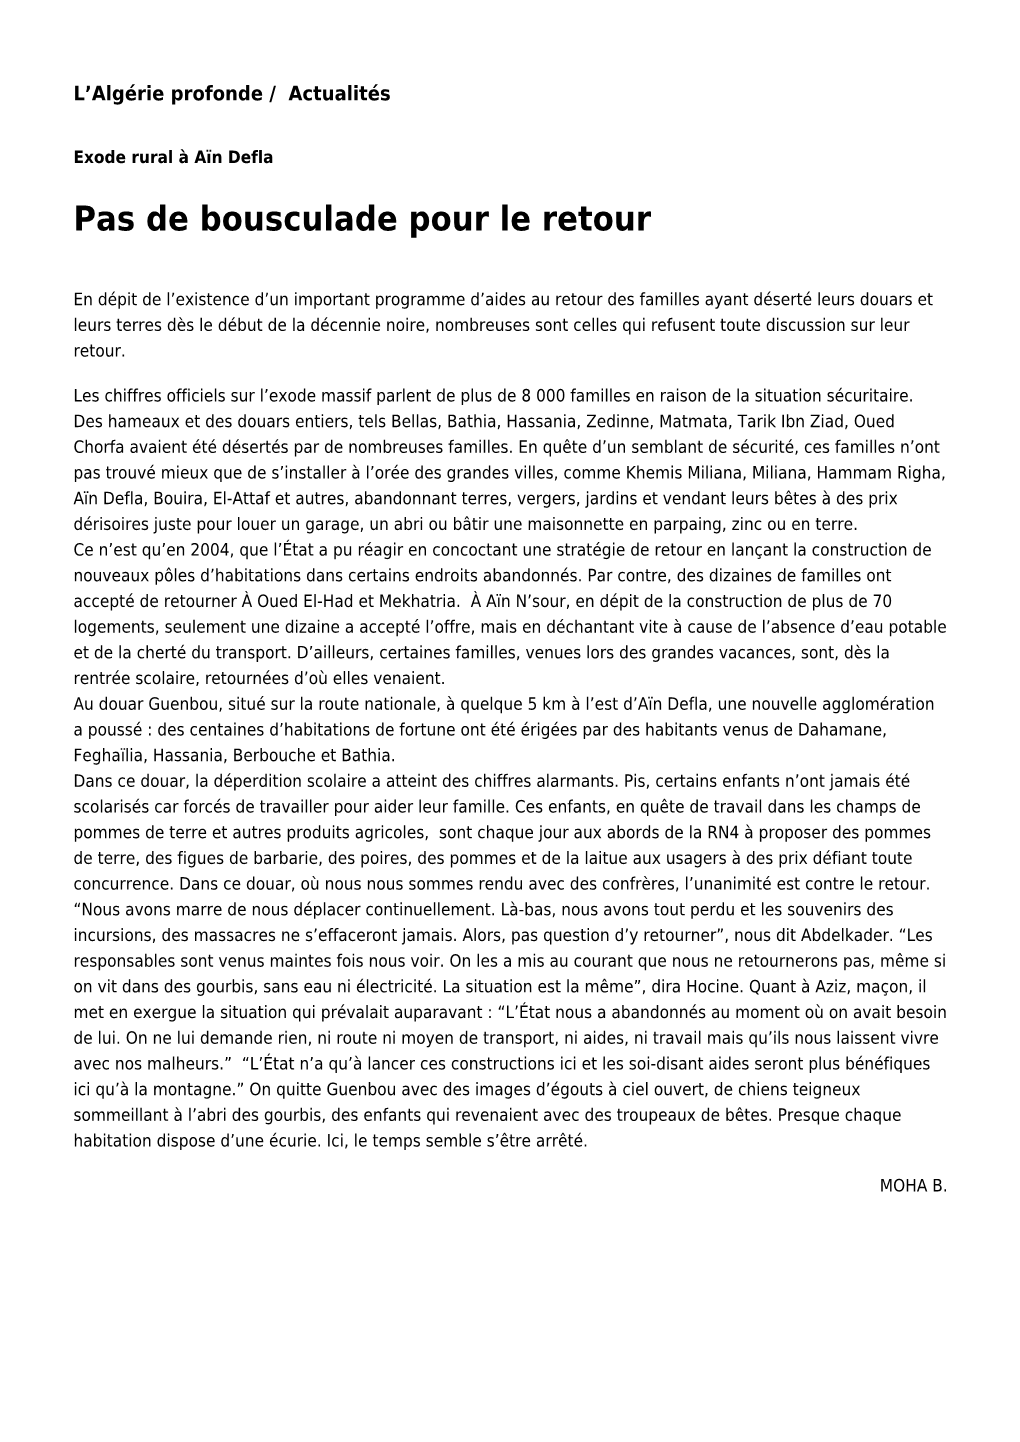 Pas De Bousculade Pour Le Retour: Toute L'actualité Sur Liberte-Algerie.Com